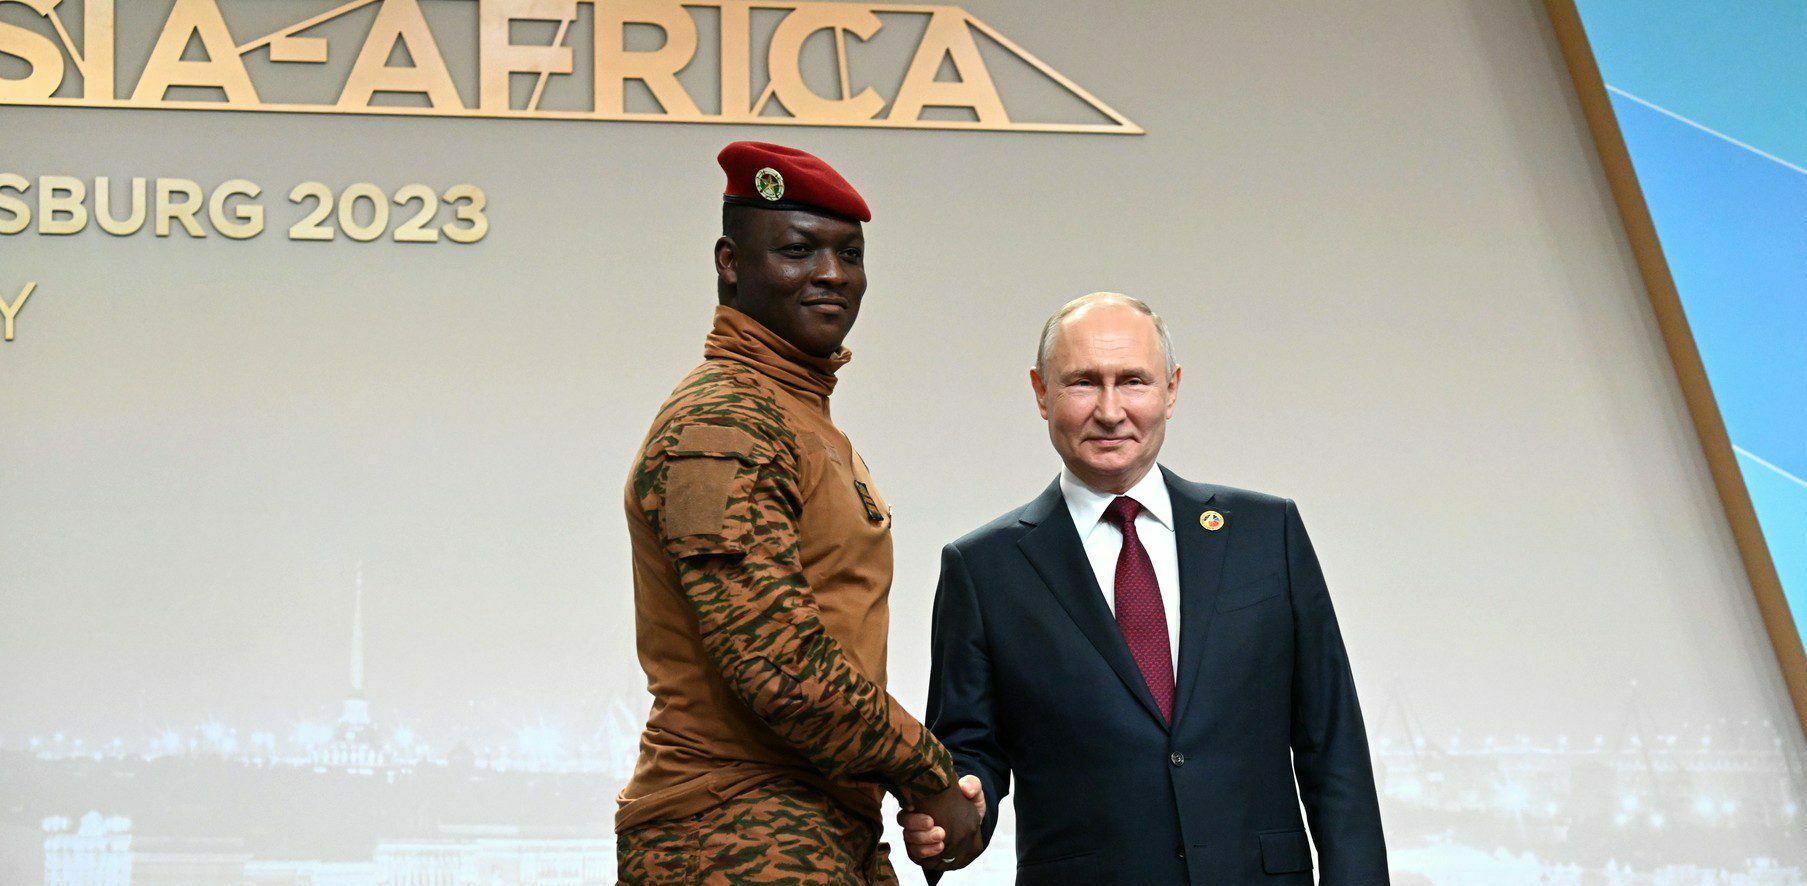 La Russia e la scommessa africana su sicurezza e cooperazione internazionale